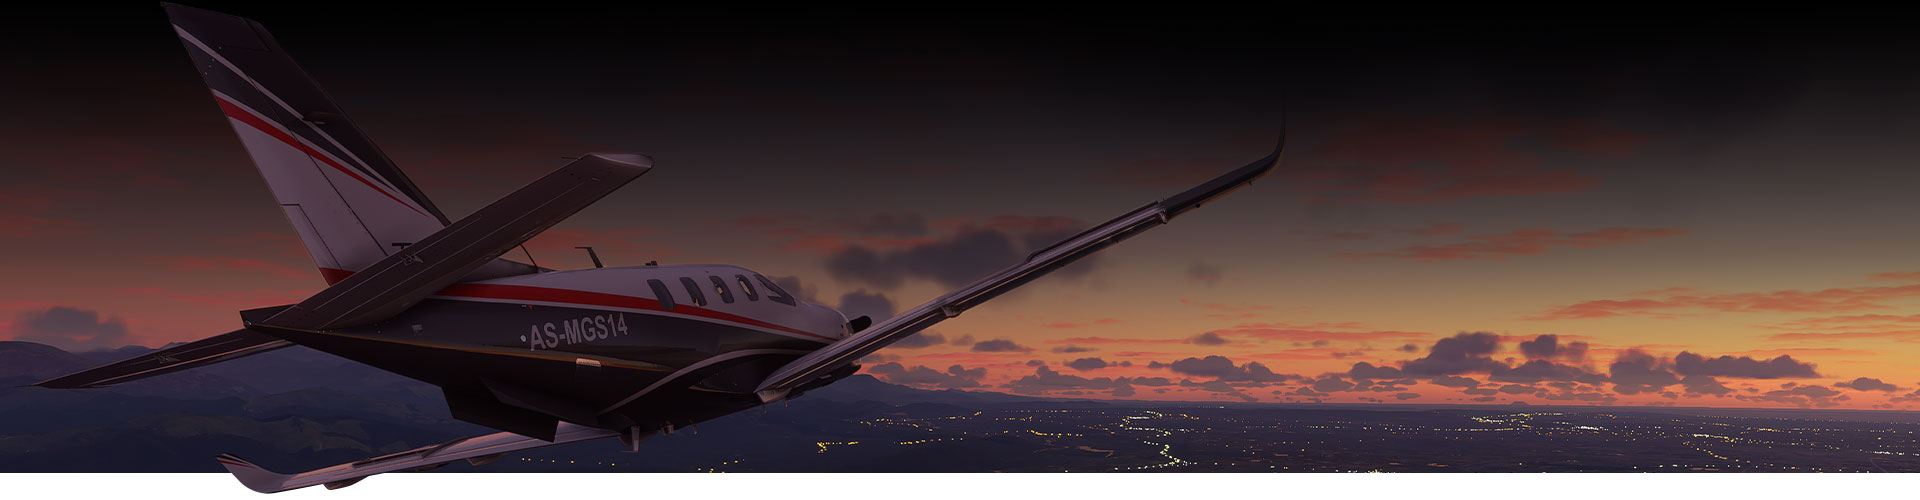 Flugzeug vom Microsoft -Flugsimulator fliegt bei Sonnenuntergang über eine Stadt